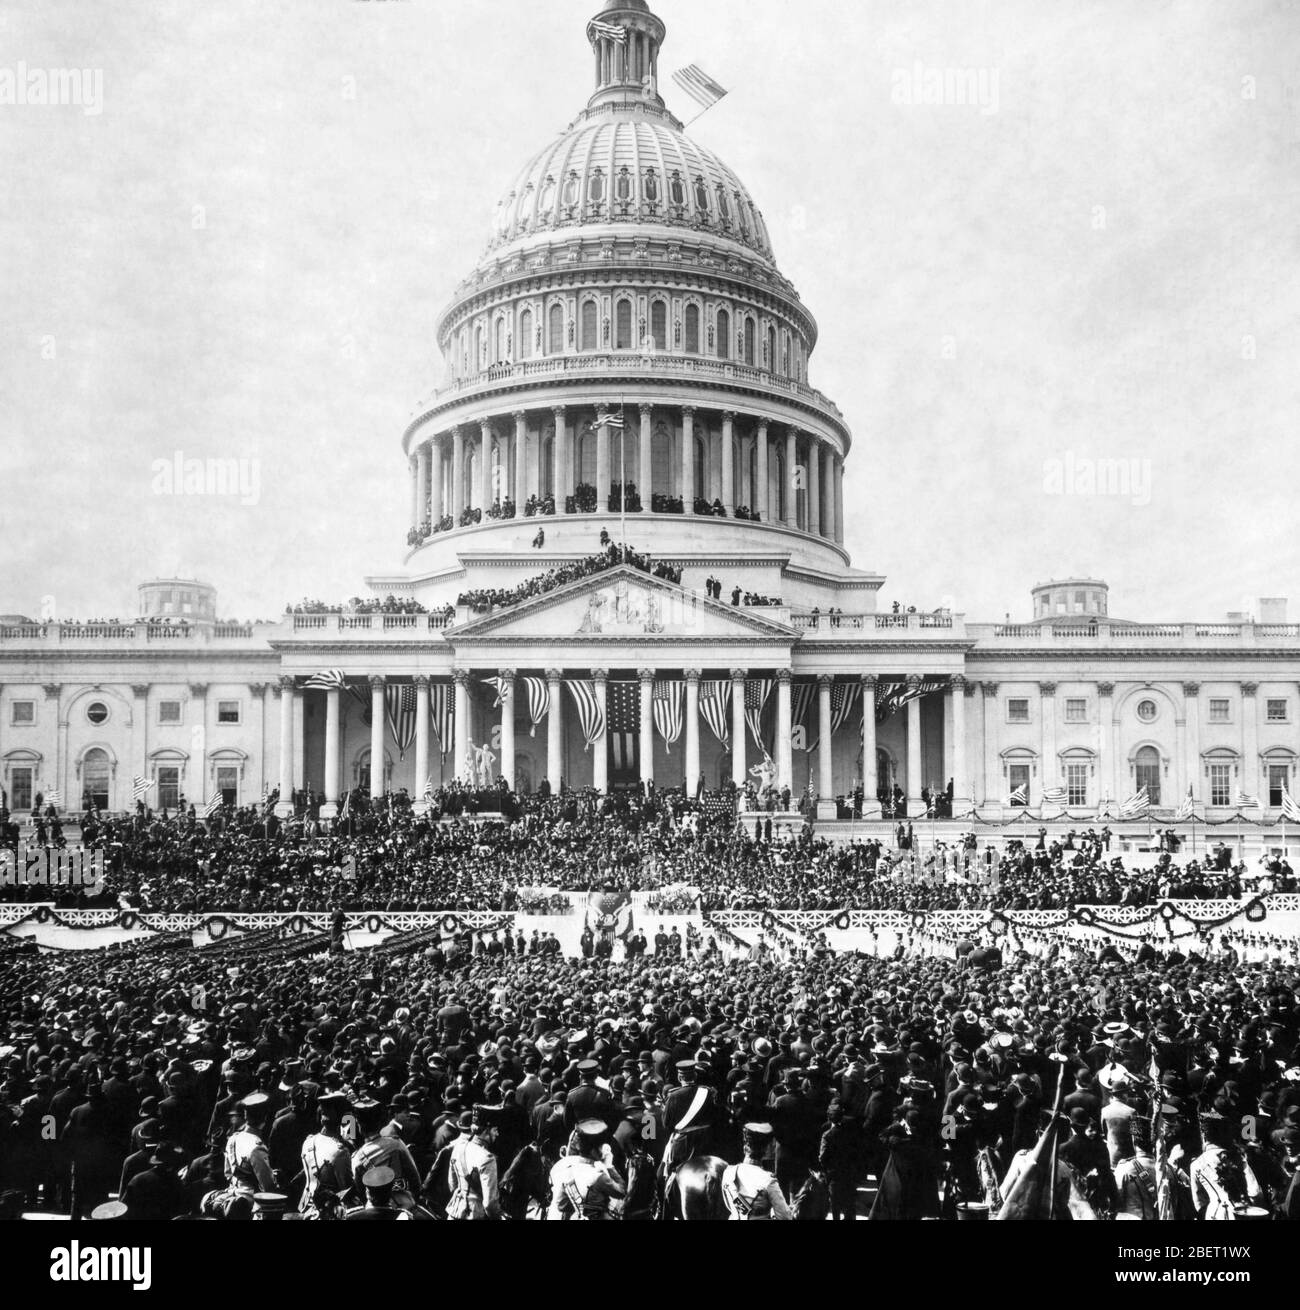 Menschenmassen versammelten sich vor dem US-Kapitol zur Einweihung von Theodore Roosevelt, 1905. Stockfoto